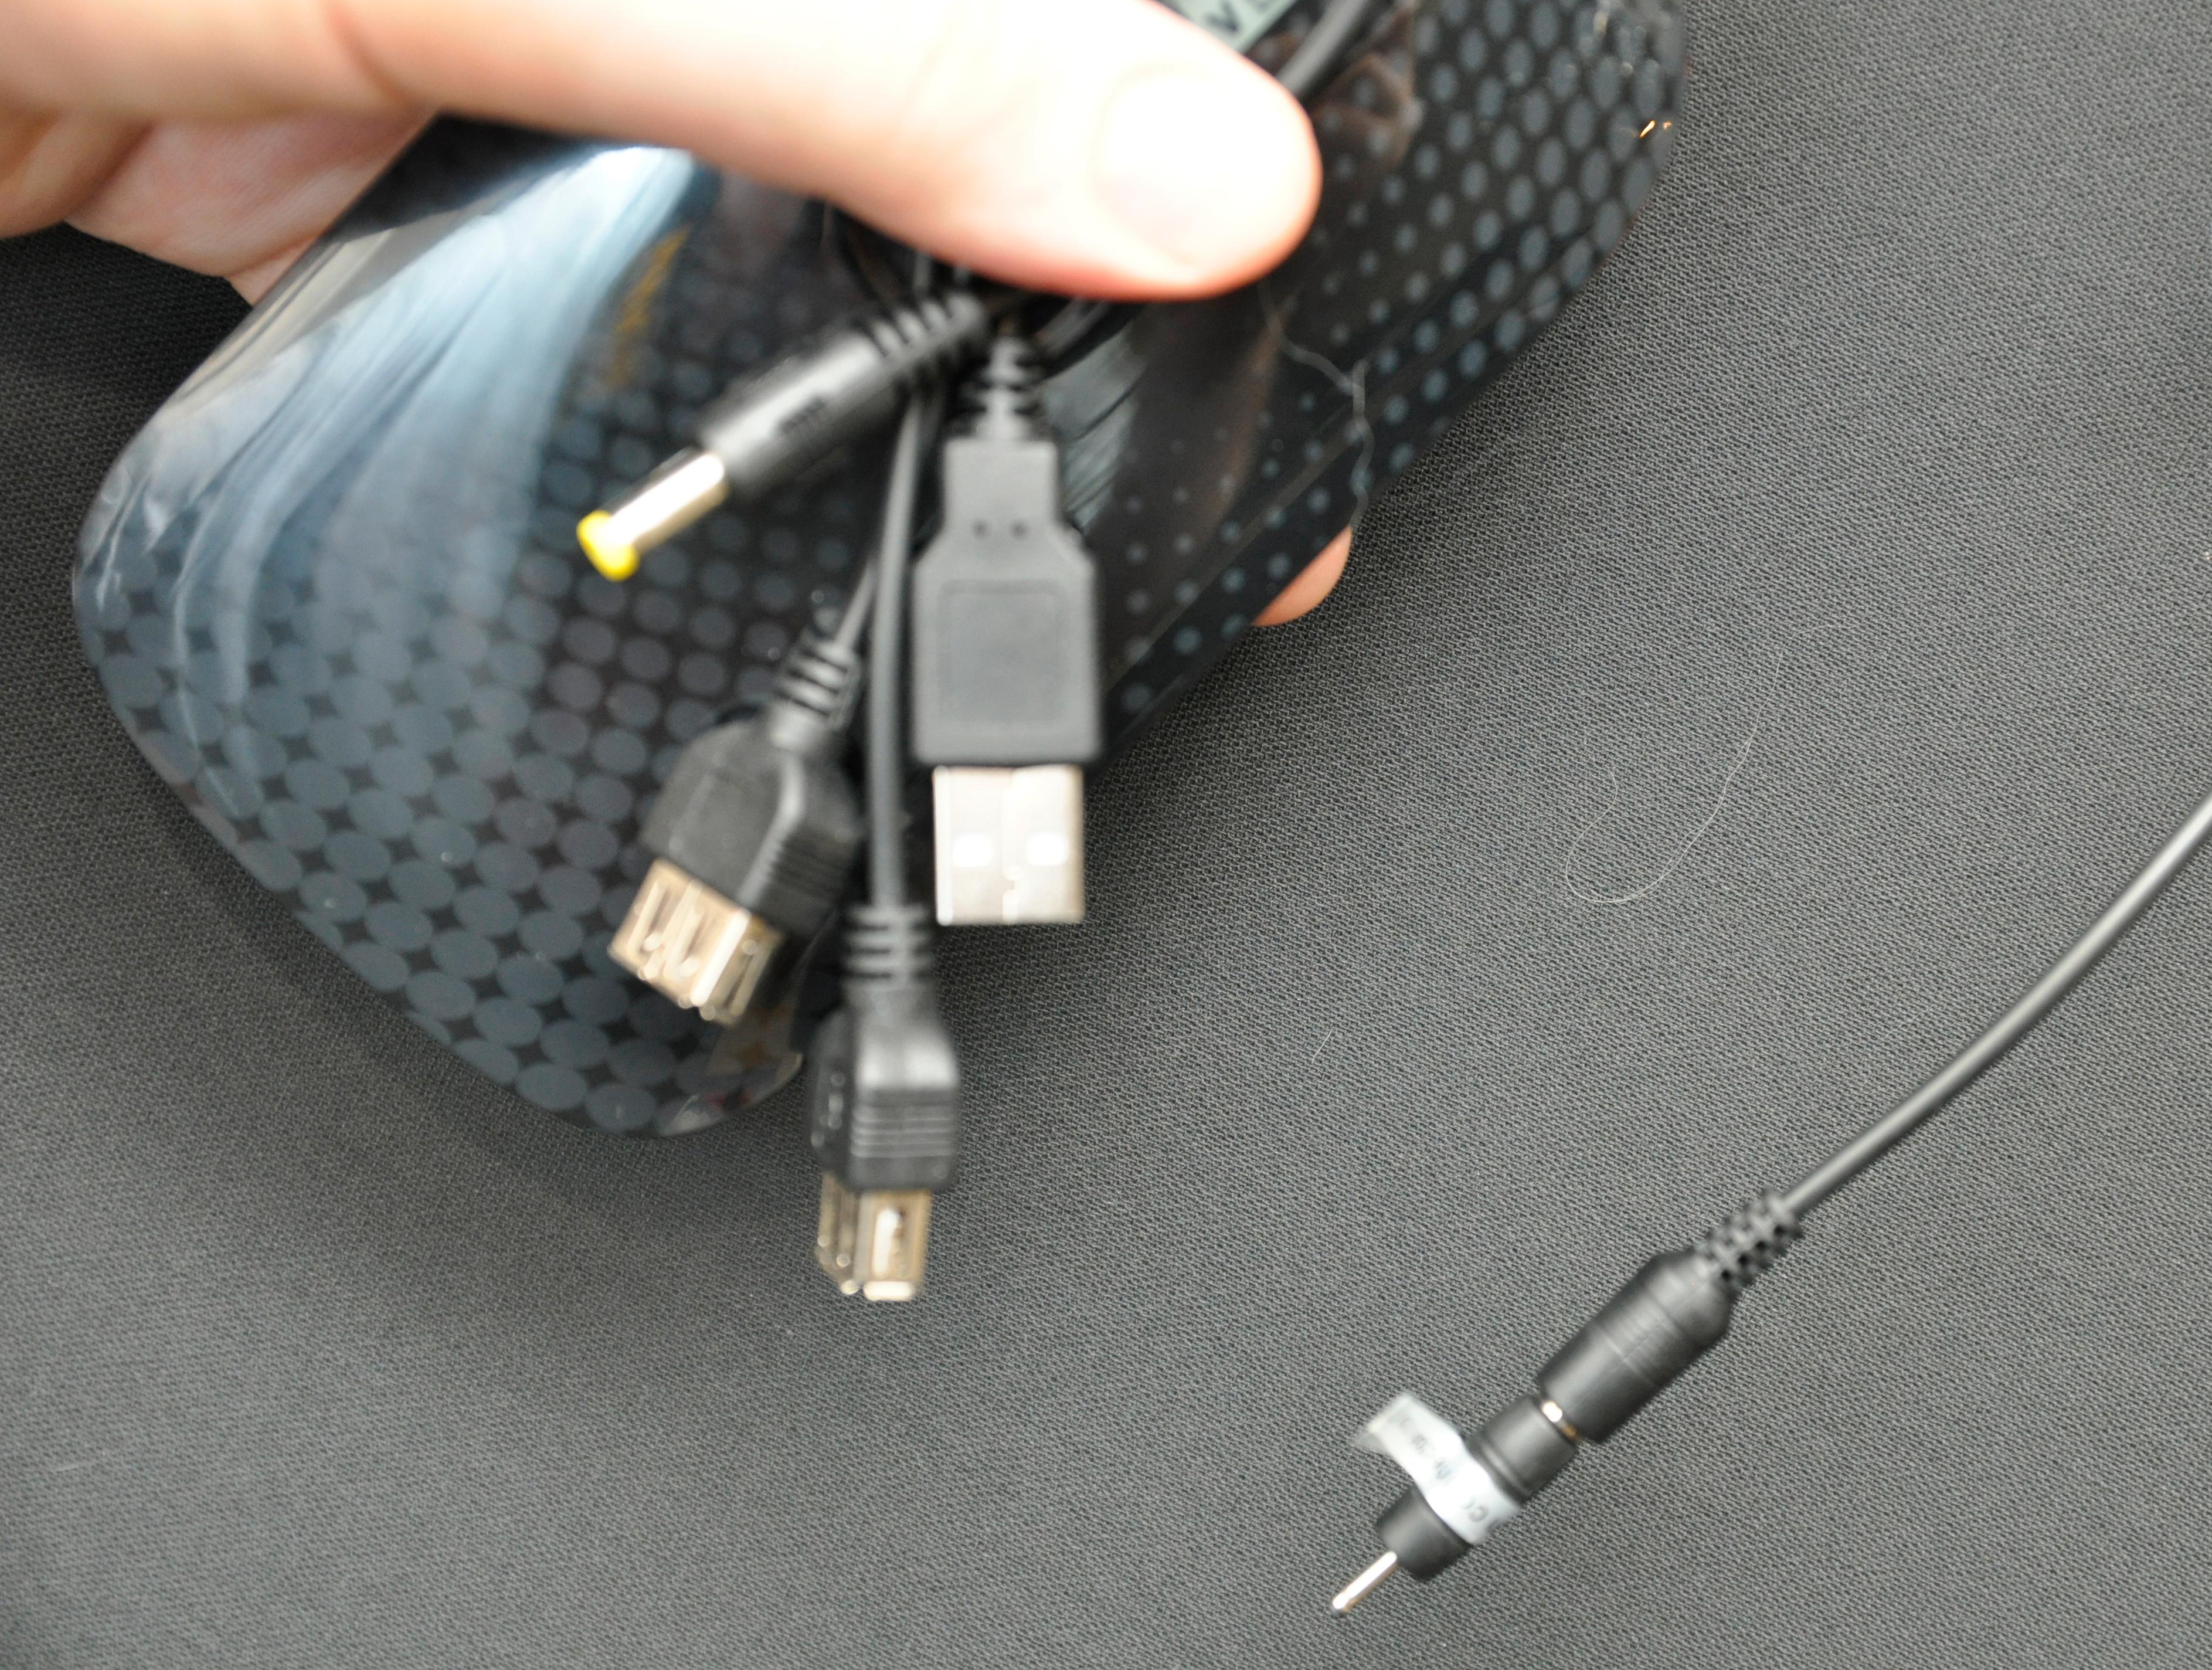 Det følger med et stort utvalg kabler og tilkoblinger for bruk med utstyr som ikke lades via USB-kontakt.